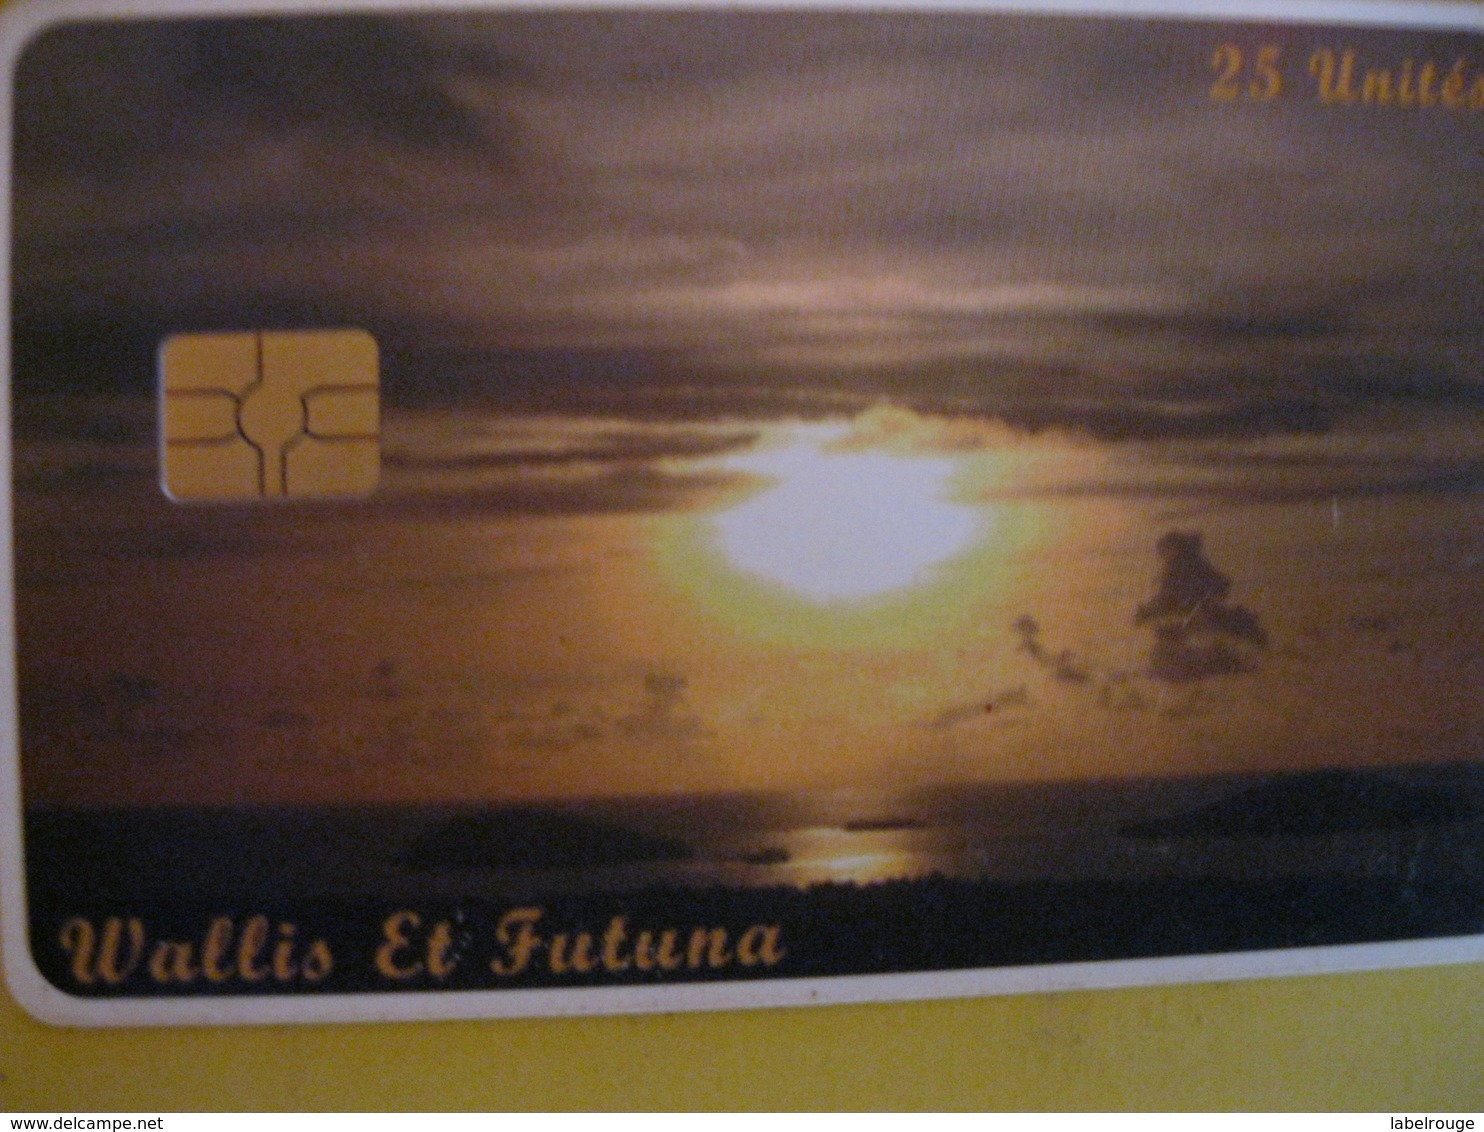 Telecarte De Wallis Et Futuna - Wallis Und Futuna